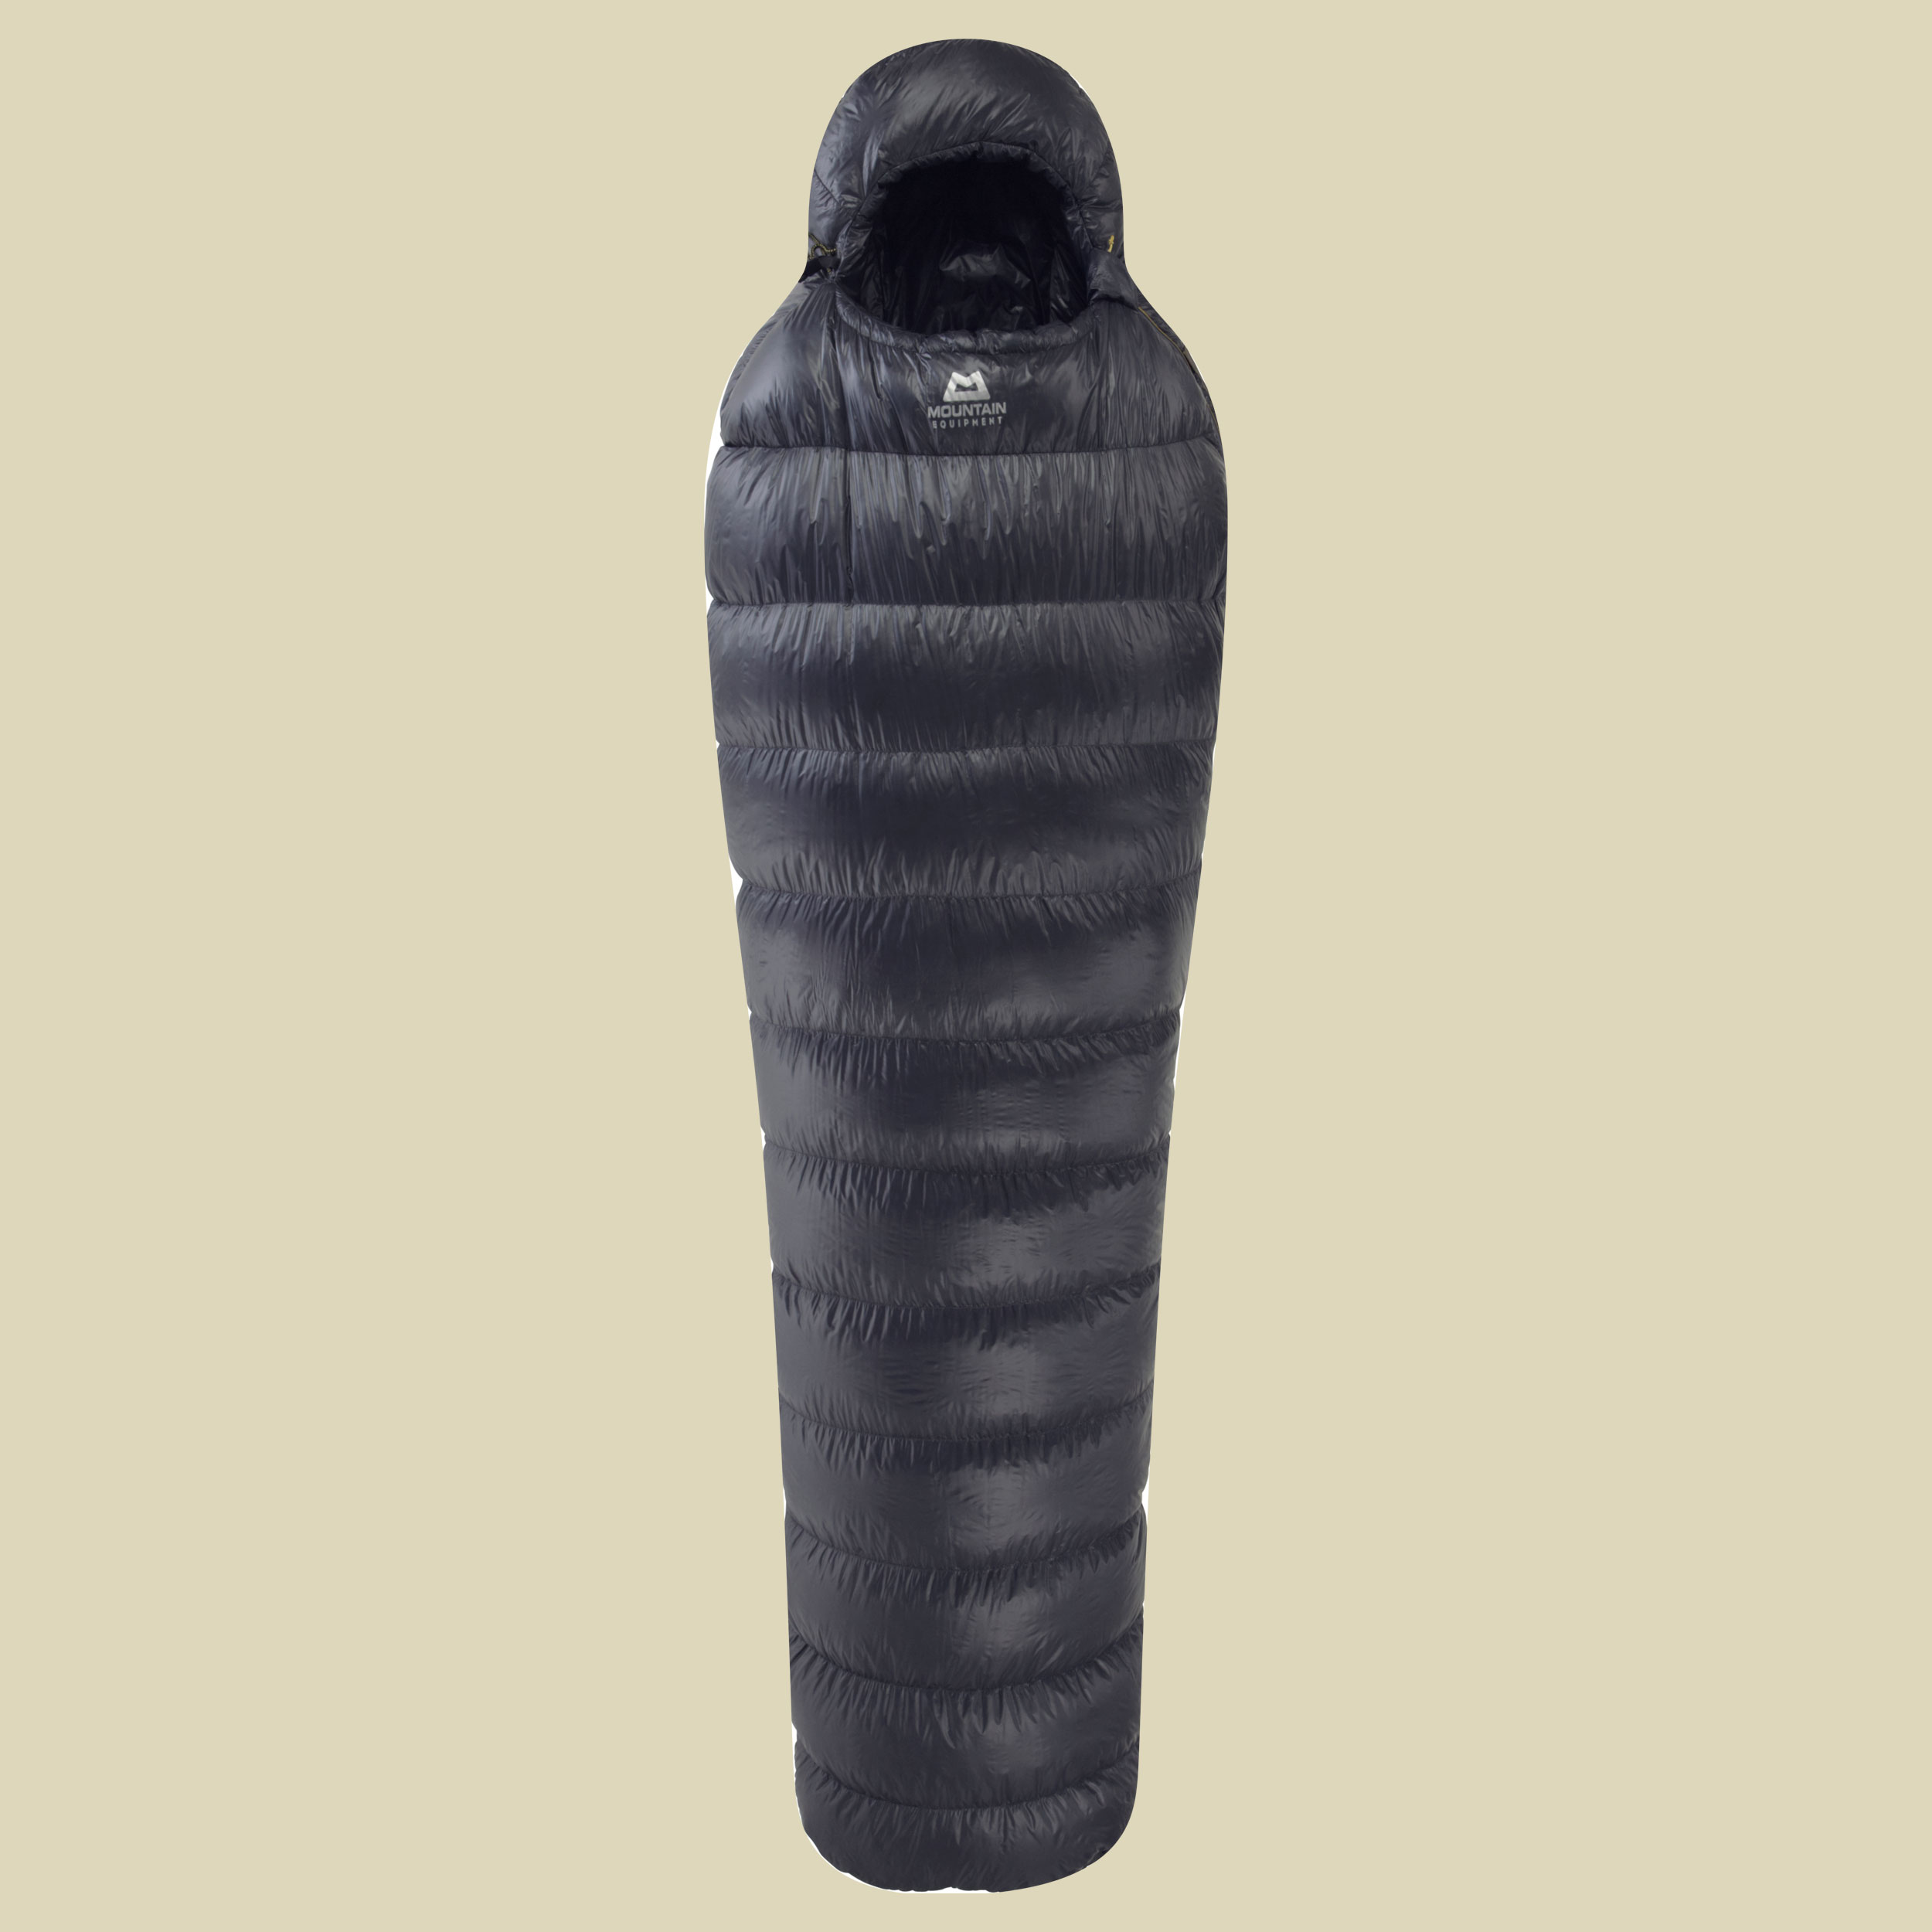 Firefly bis Körpergröße Schlafsack 200 cm (long) cm ombre blue,Reißverschluss Schlafsack links